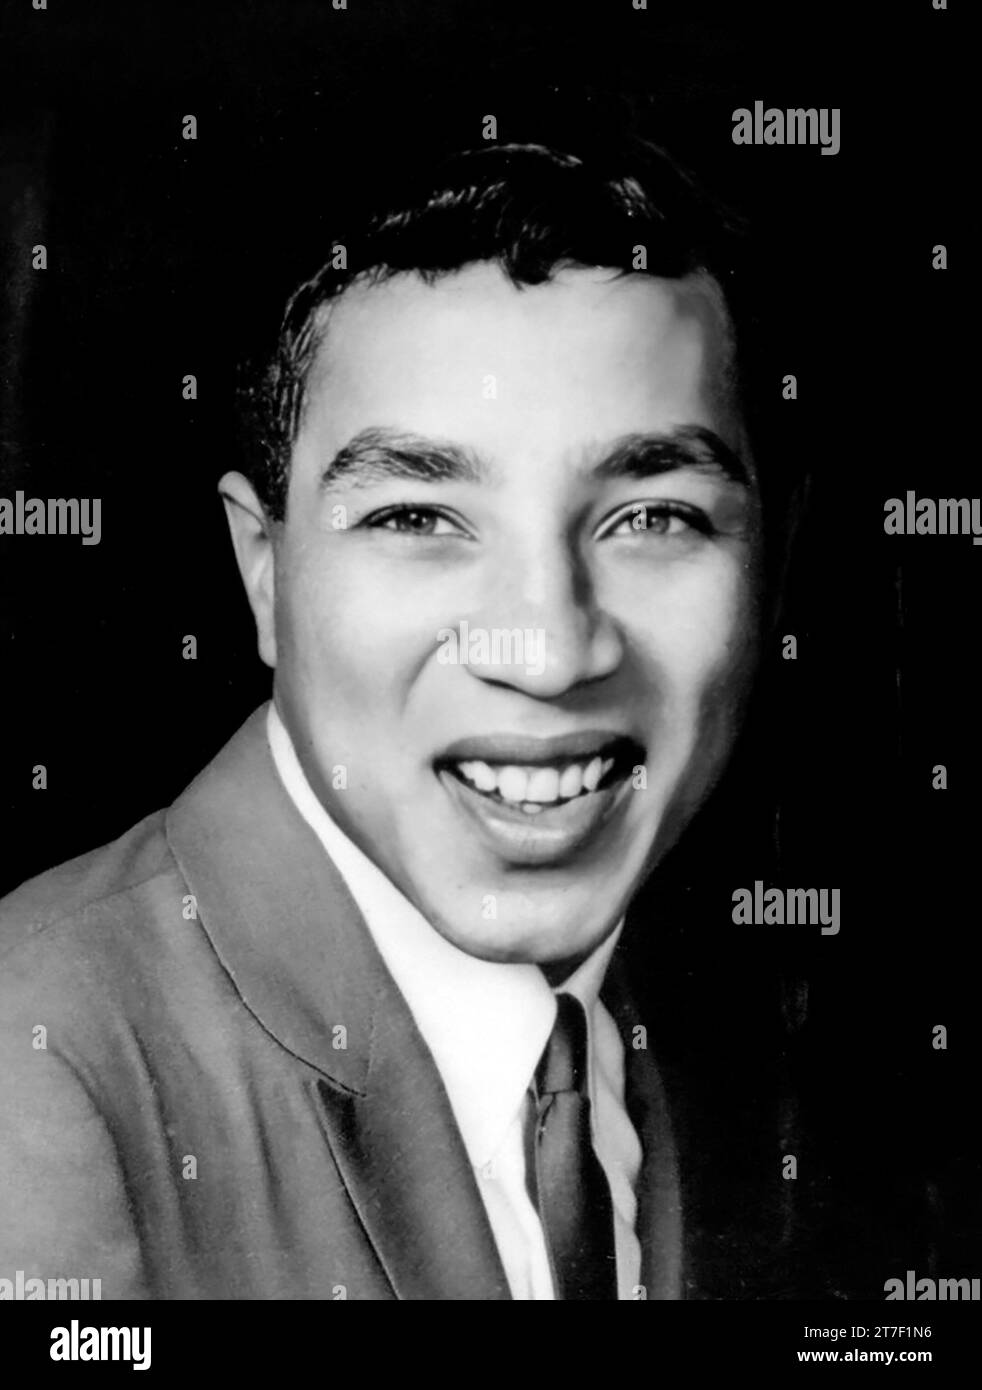 Smokey Robinson. Porträt des amerikanischen Sängers William „Smokey“ Robinson Jr. (* 1940) als er Mitglied der Miracles war, Publicity Photo, um 1962 Stockfoto